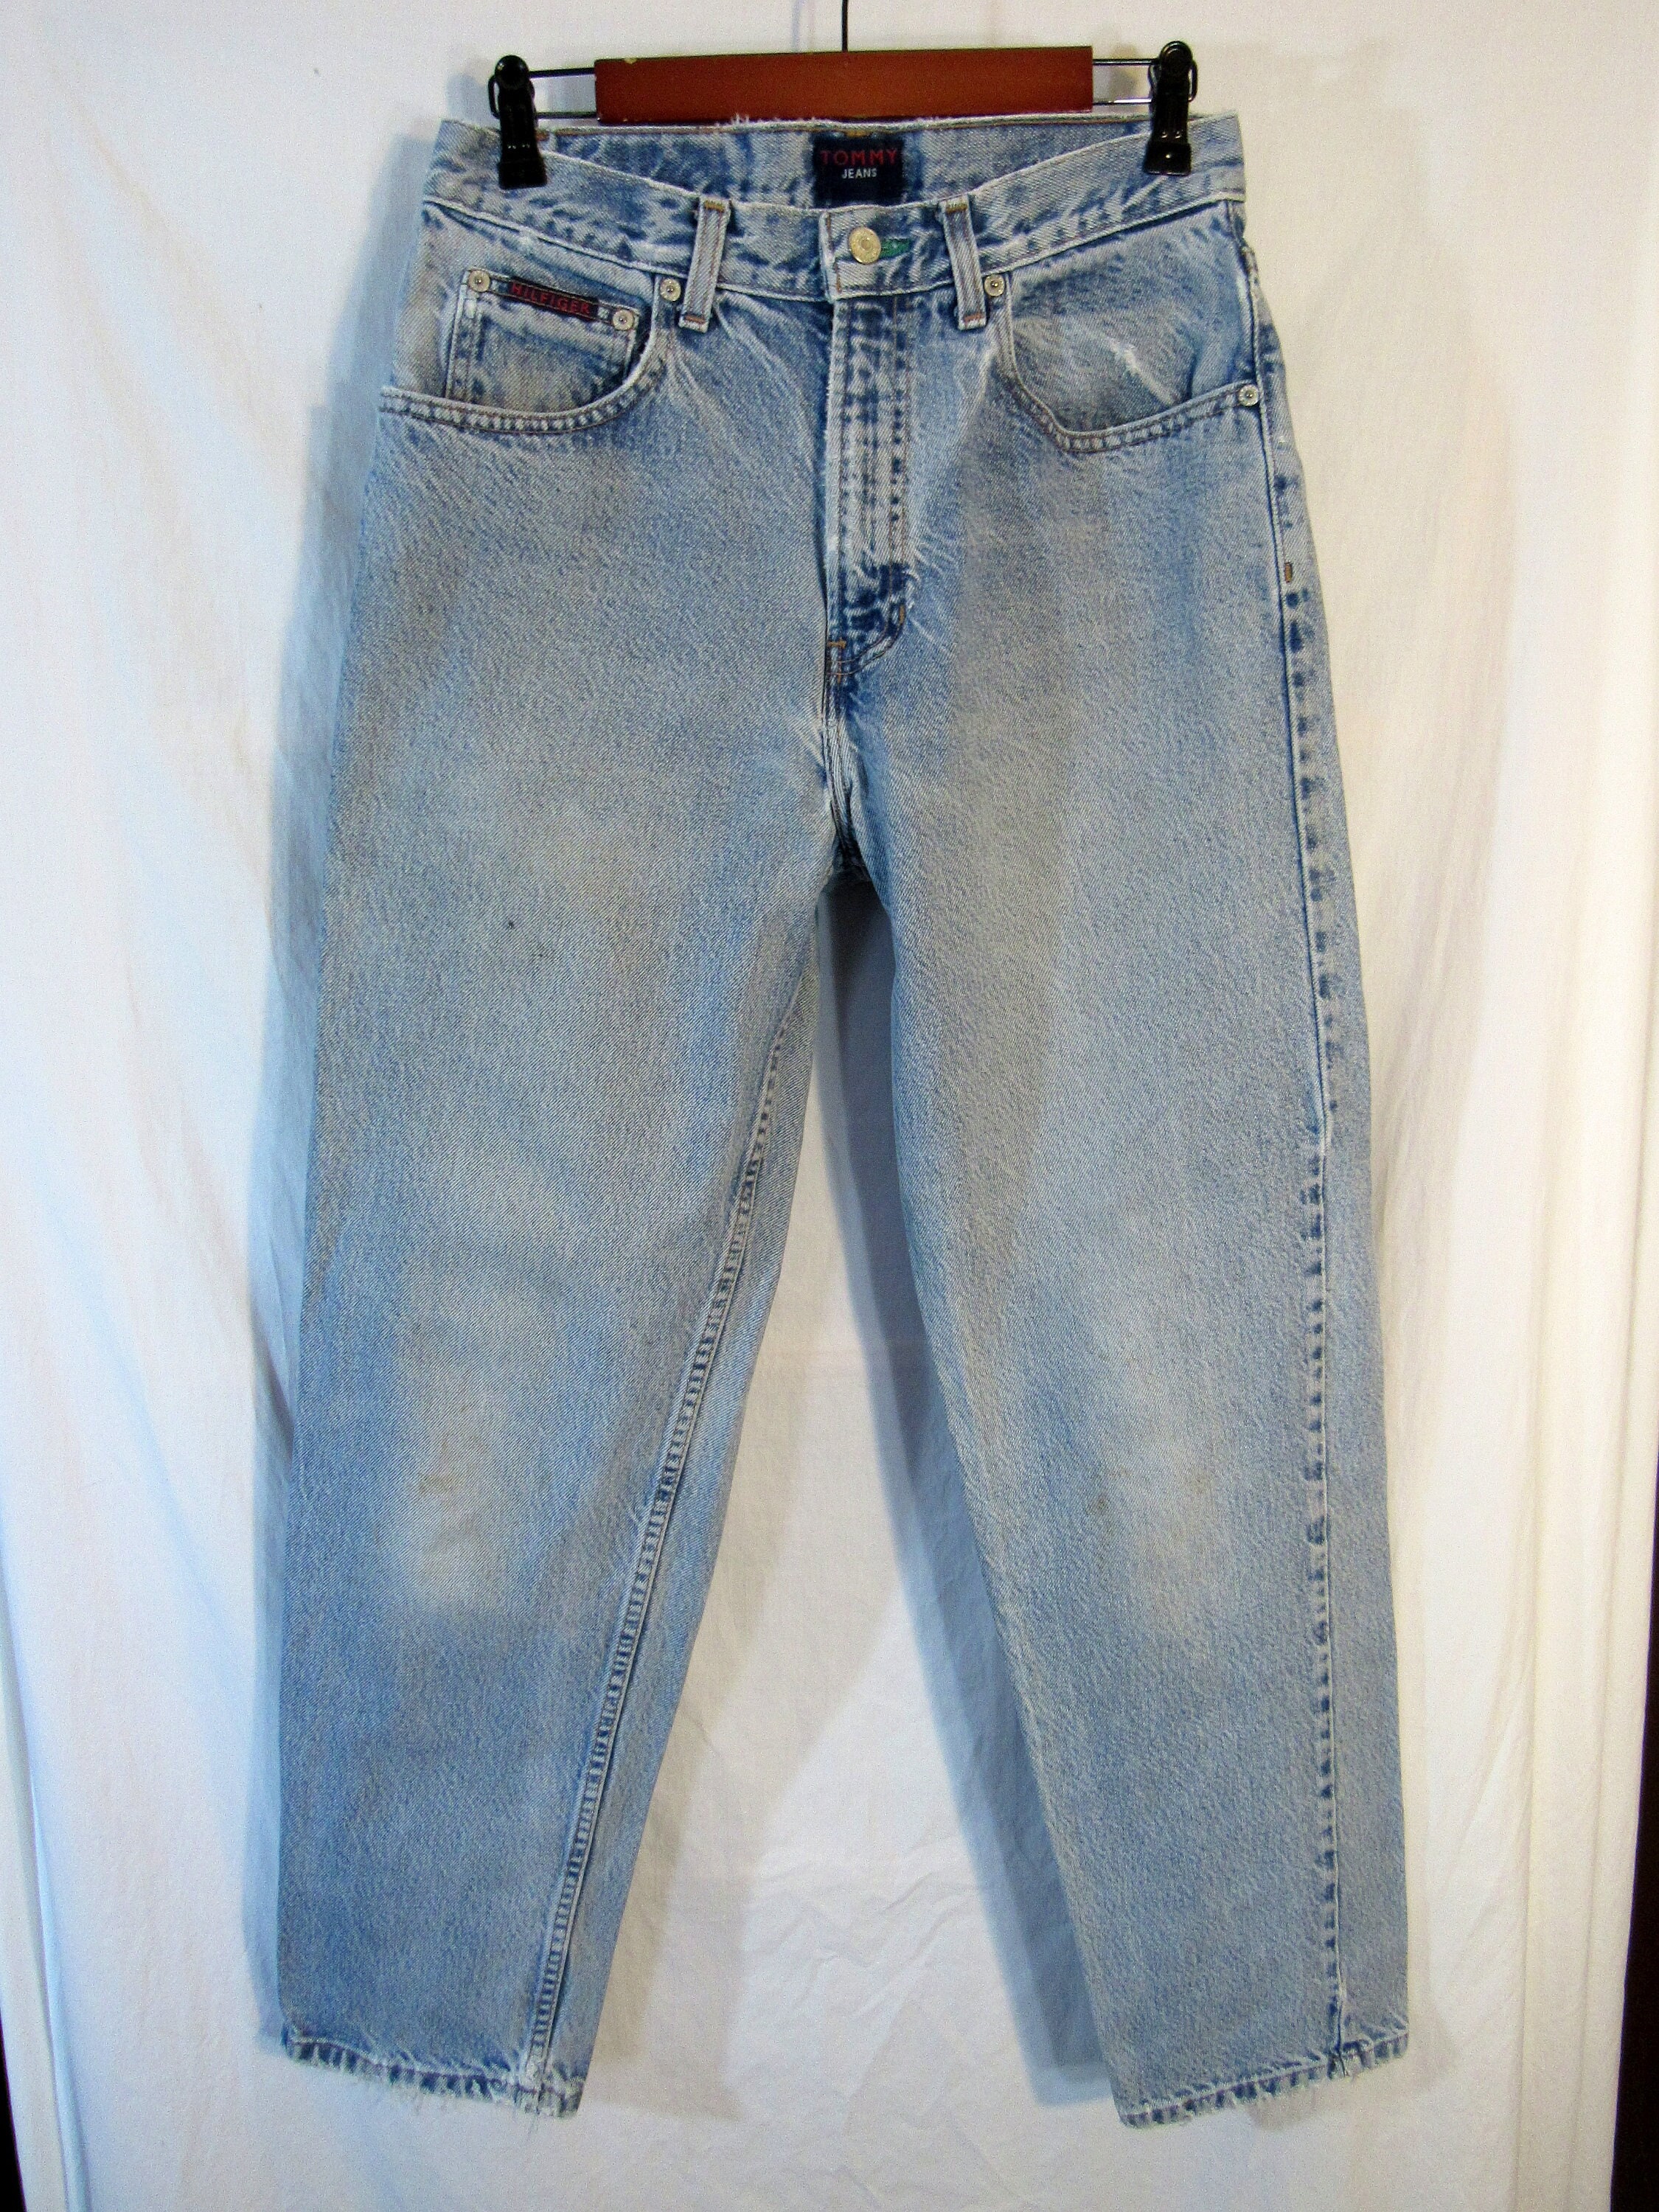 Vintage Tommy Hilfiger Men's Freedom Jeans Size 30 X 30.5 Blue Flag Pocket  Script 1990 Denim Faded and Frayed Legit Wear USA Made 